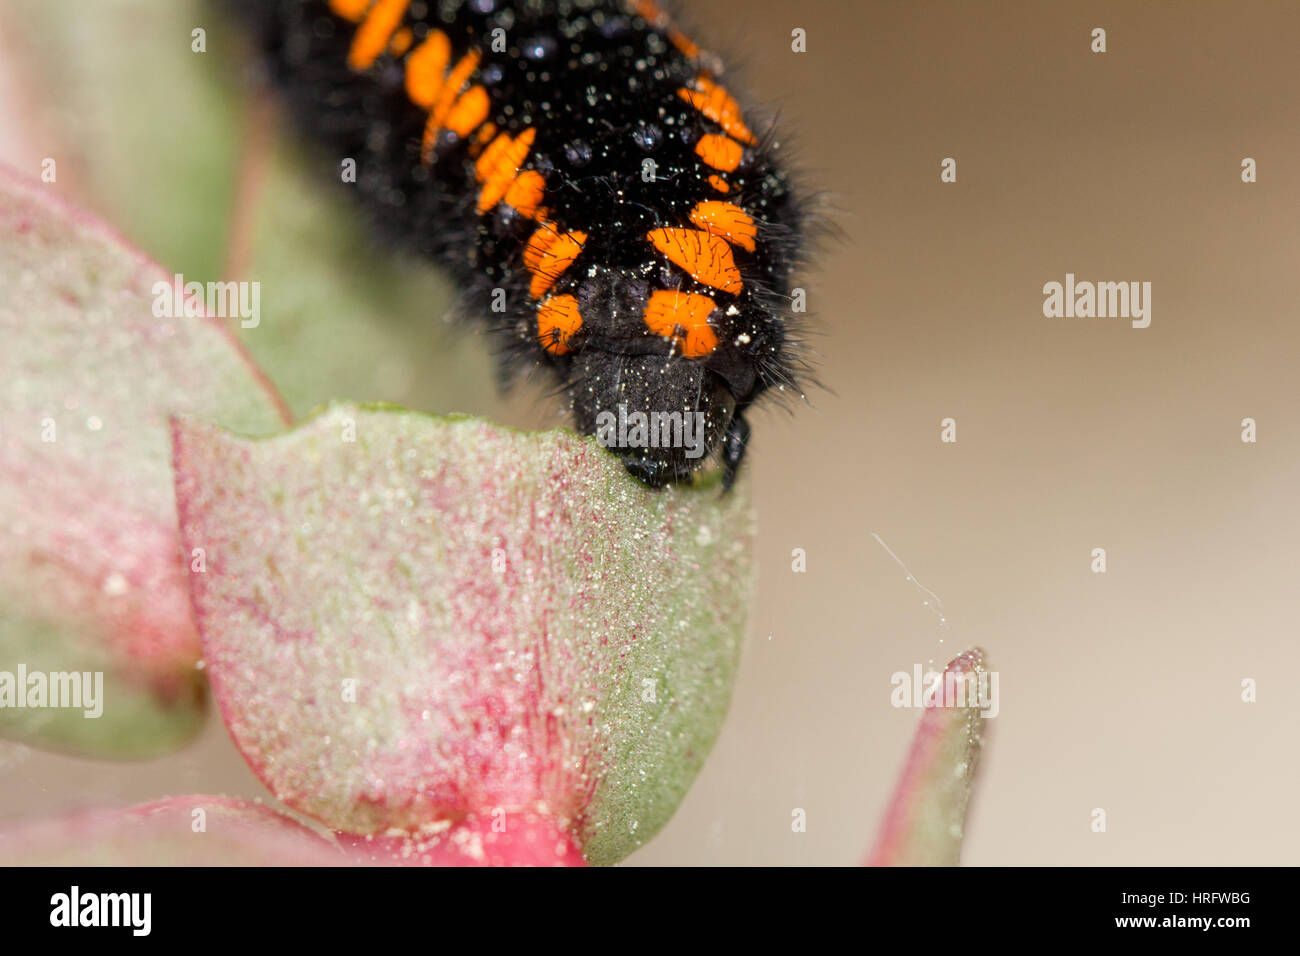 Mountain apollo caterpillar Stock Photo